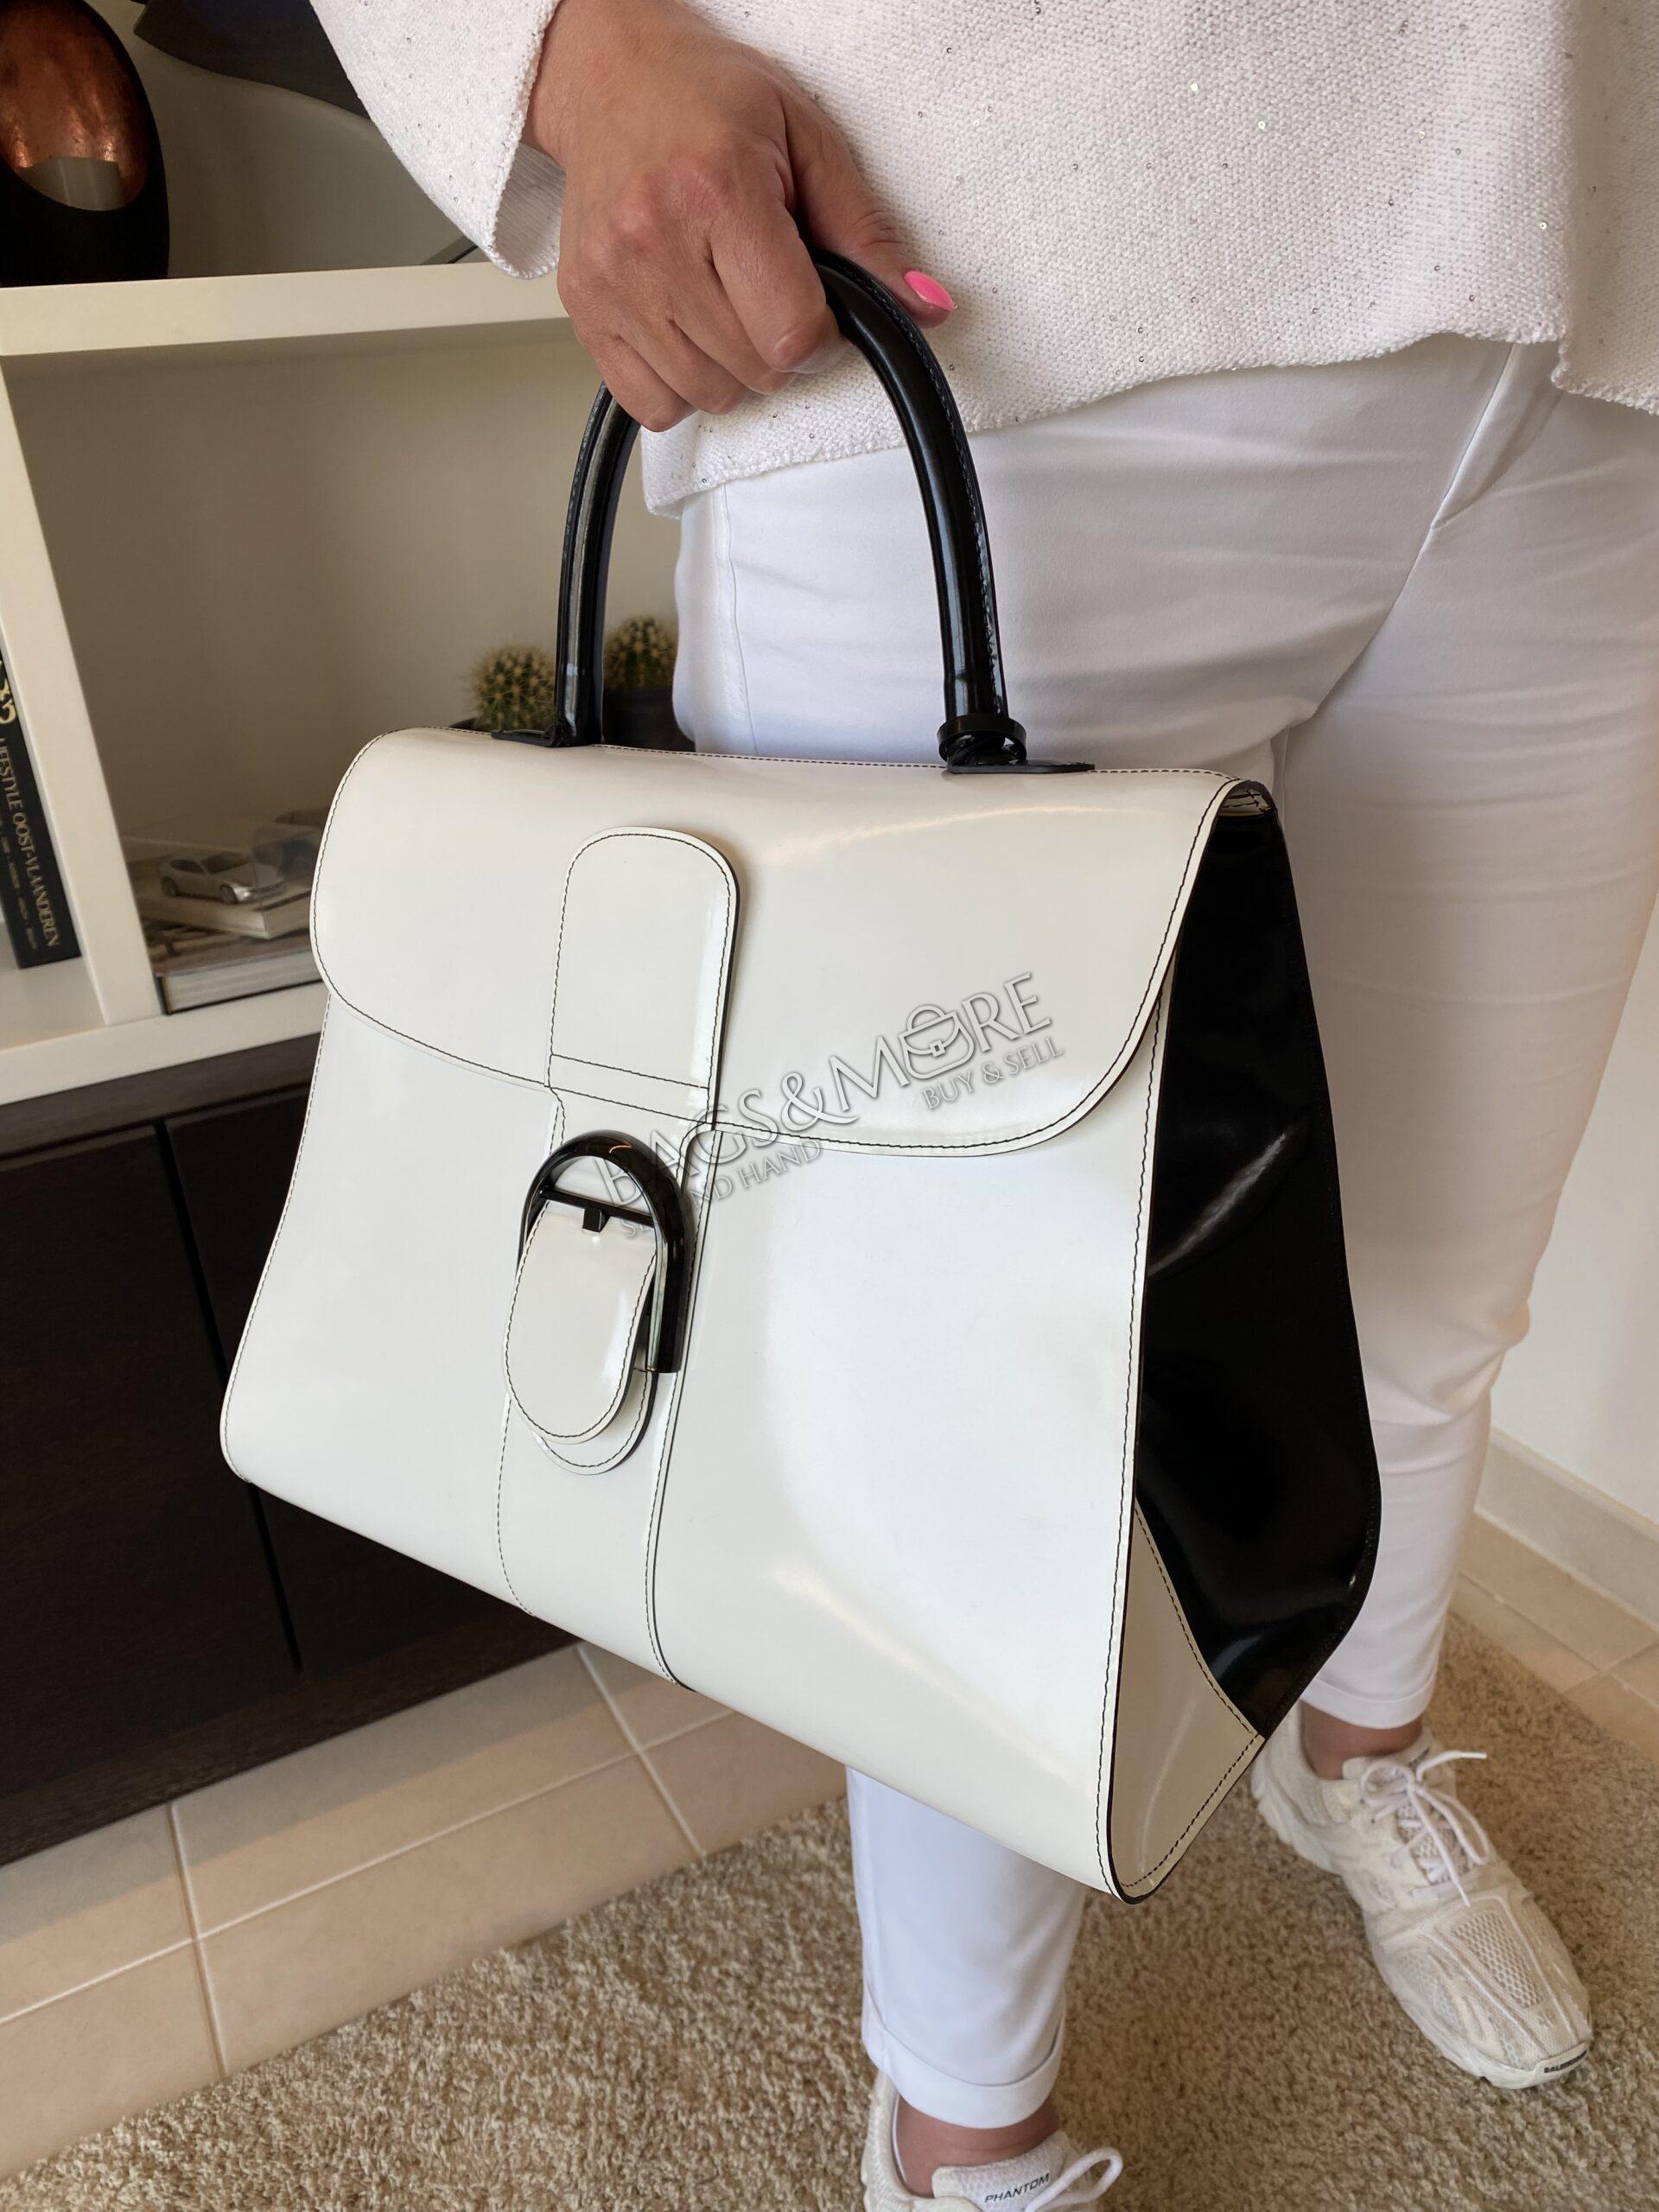 Delvaux Handbag Brillant GM Box Calf Leather White and Black